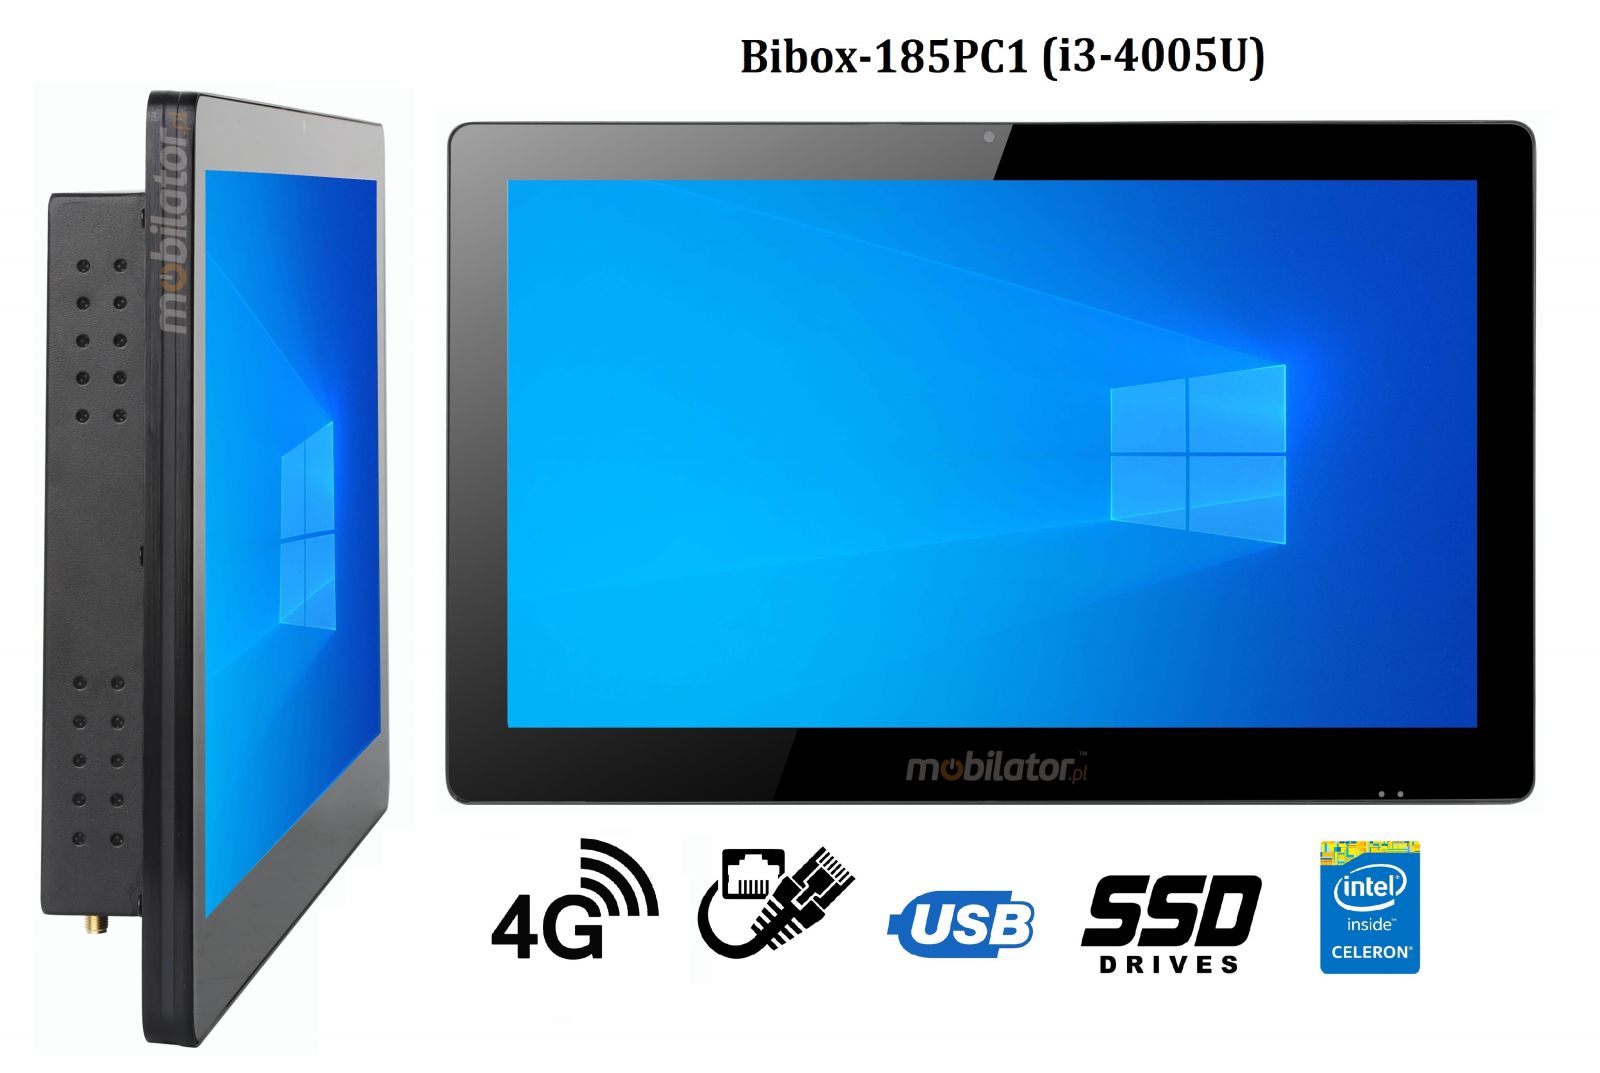 BiBOX-185PC1 (i3-4005U)v.5 - Wzmocniony panel komputerowy z IP65 (odporno woda i py) z dyskiem SSD 256 GB, technologi 4G oraz WiFi